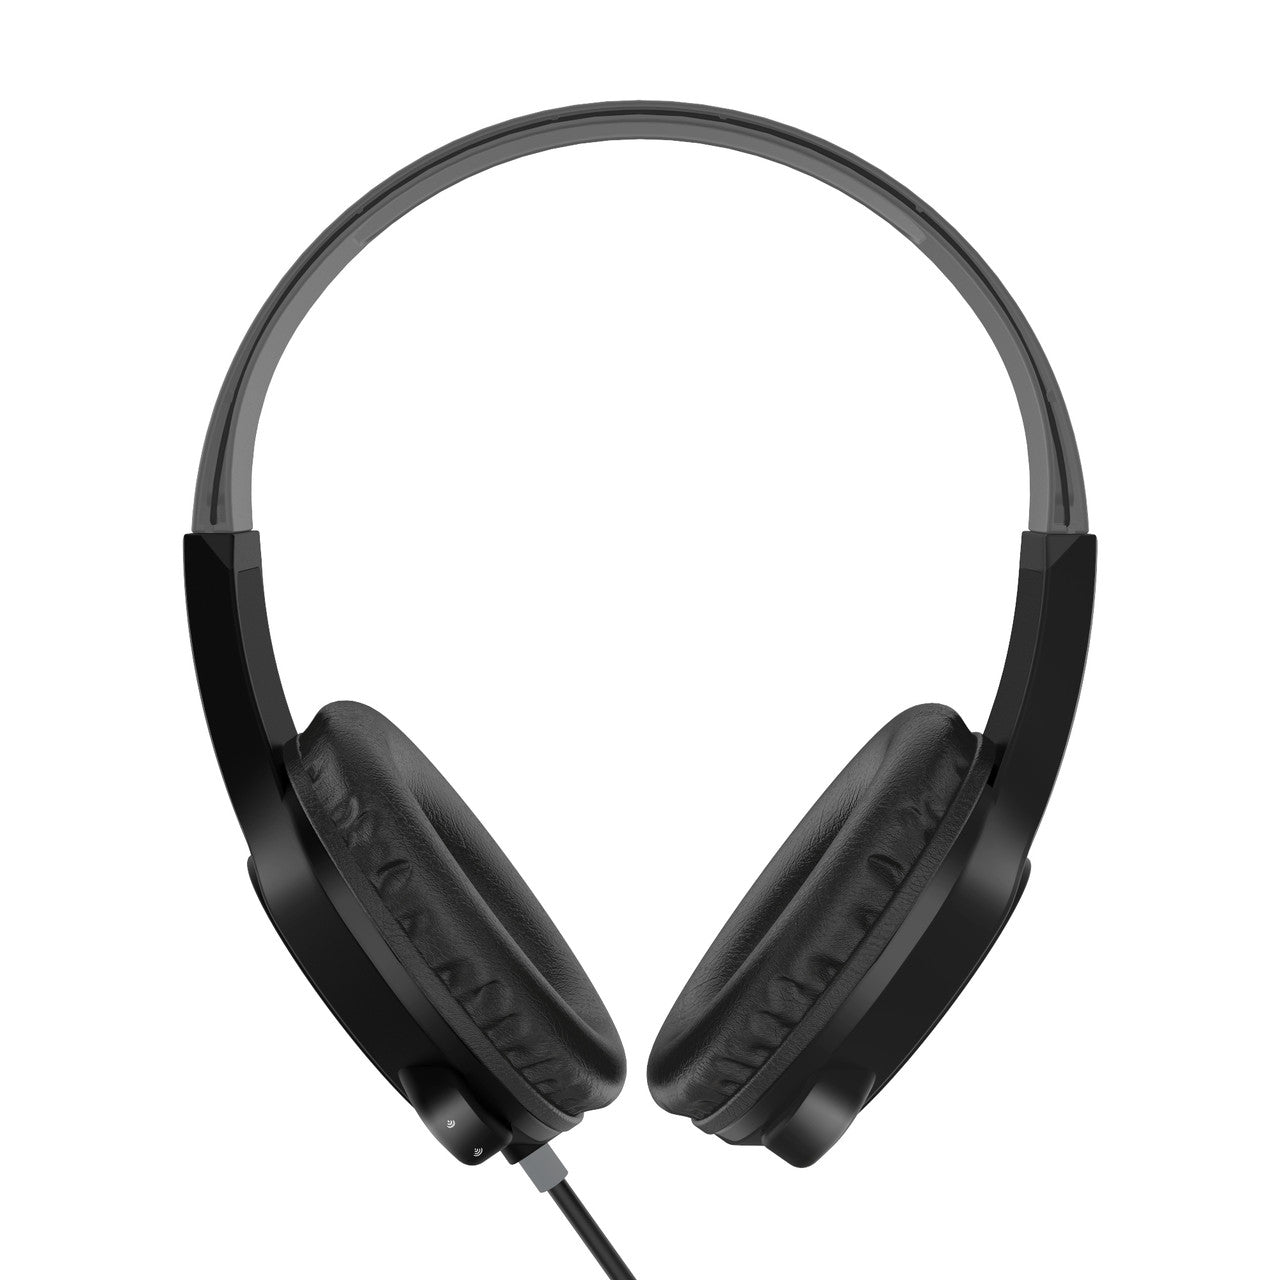 KidJamz KJ35 Safe Listening Headphones for Kids with Inline Microphone